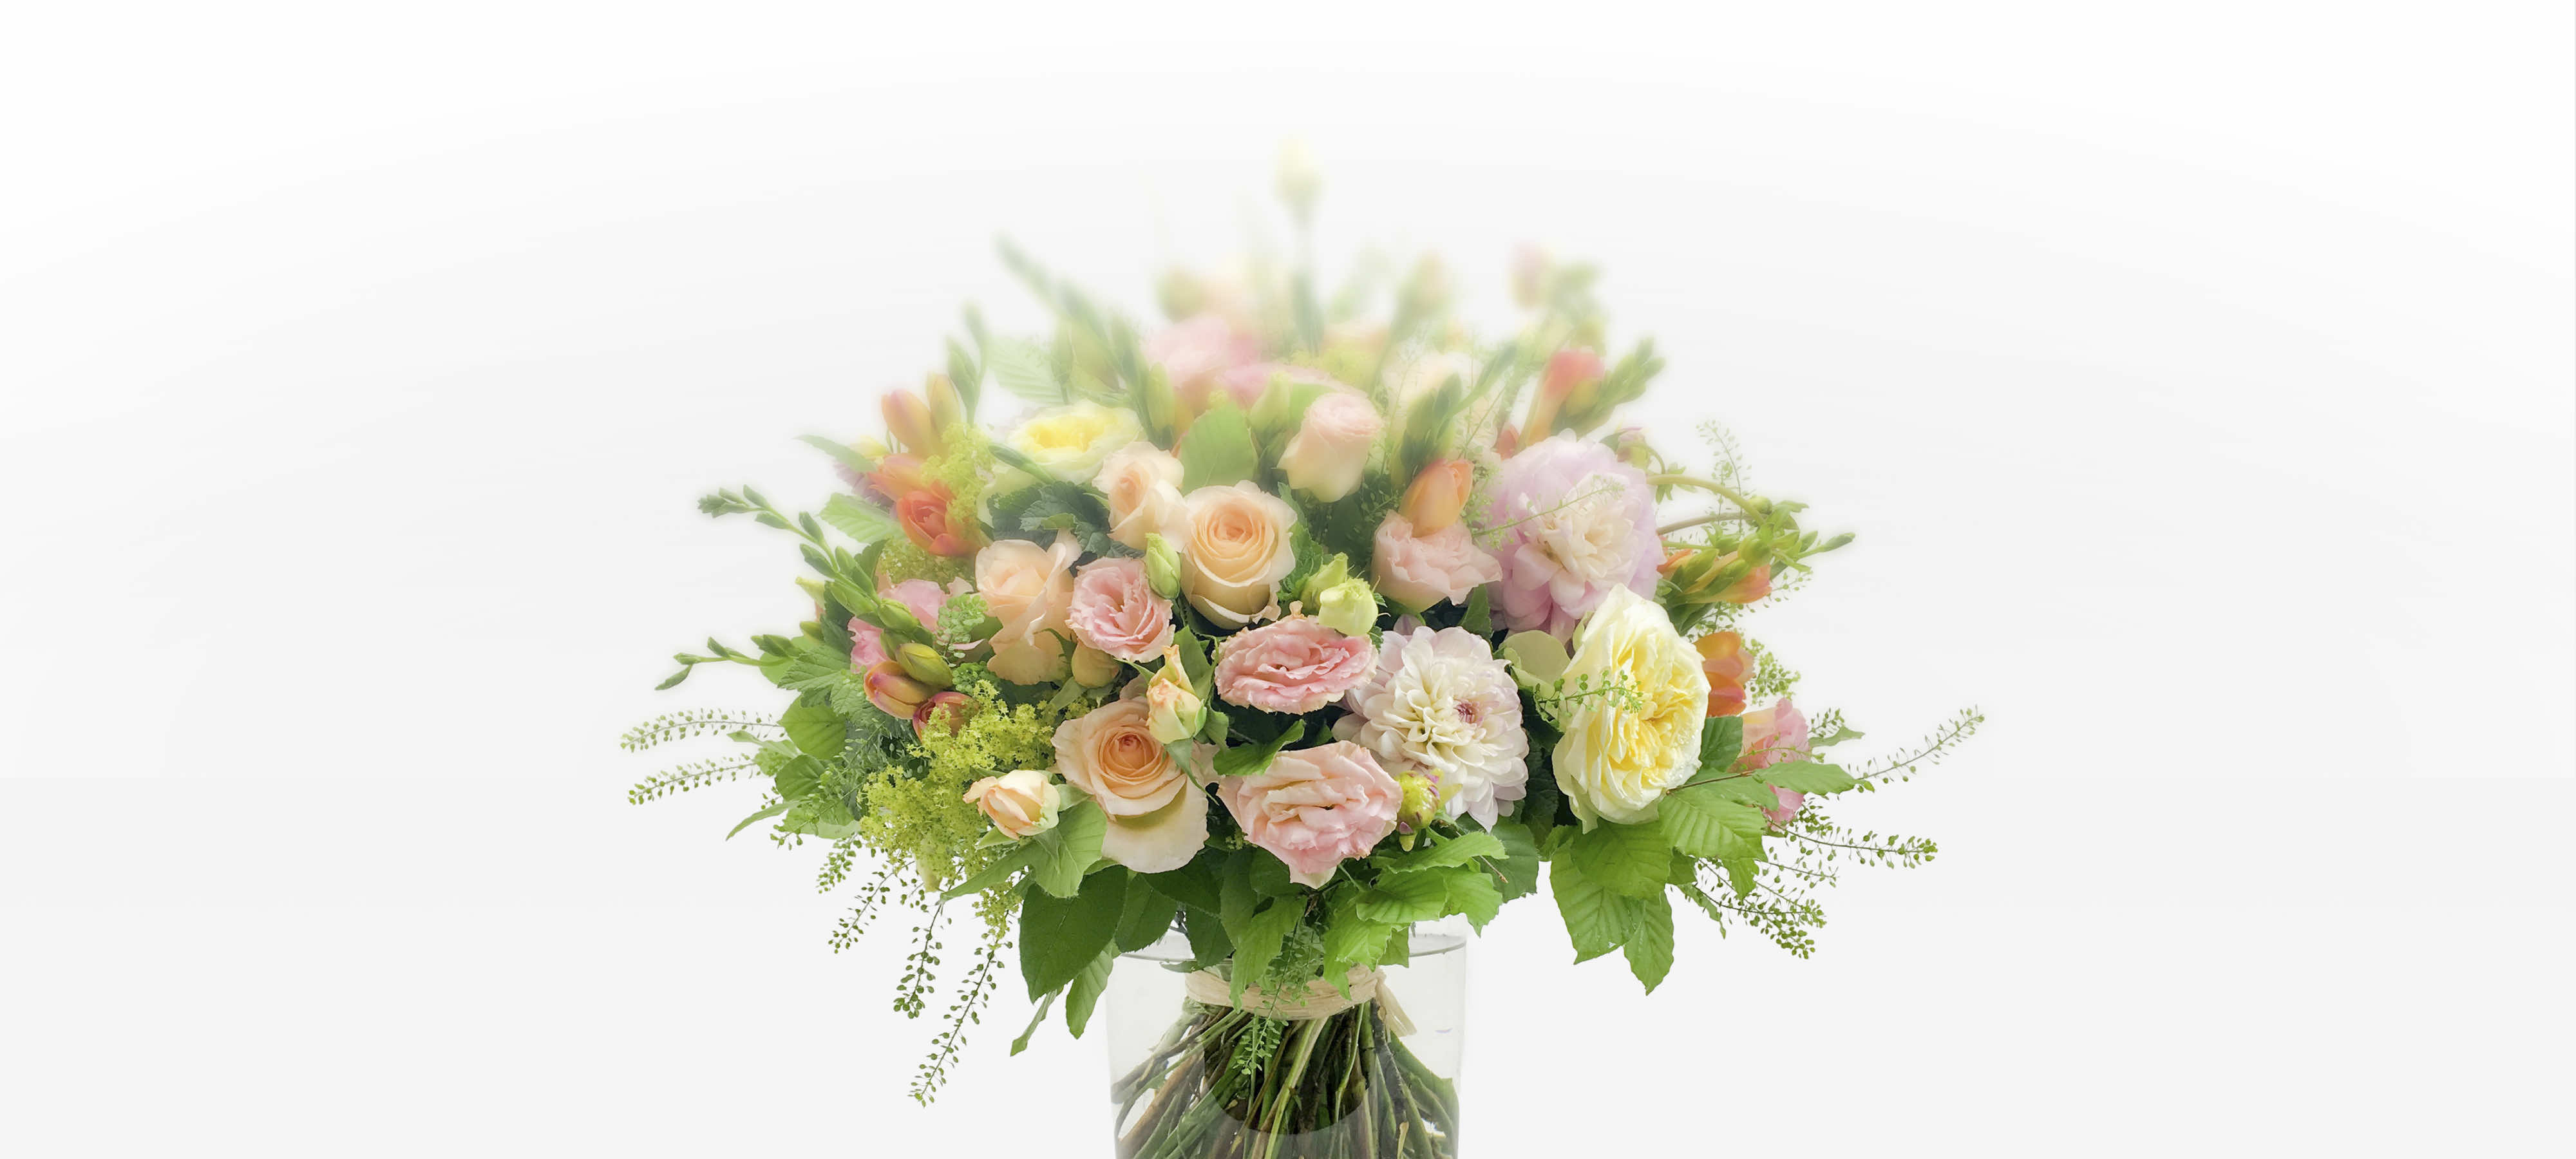 Refined pastel-toned bouquet